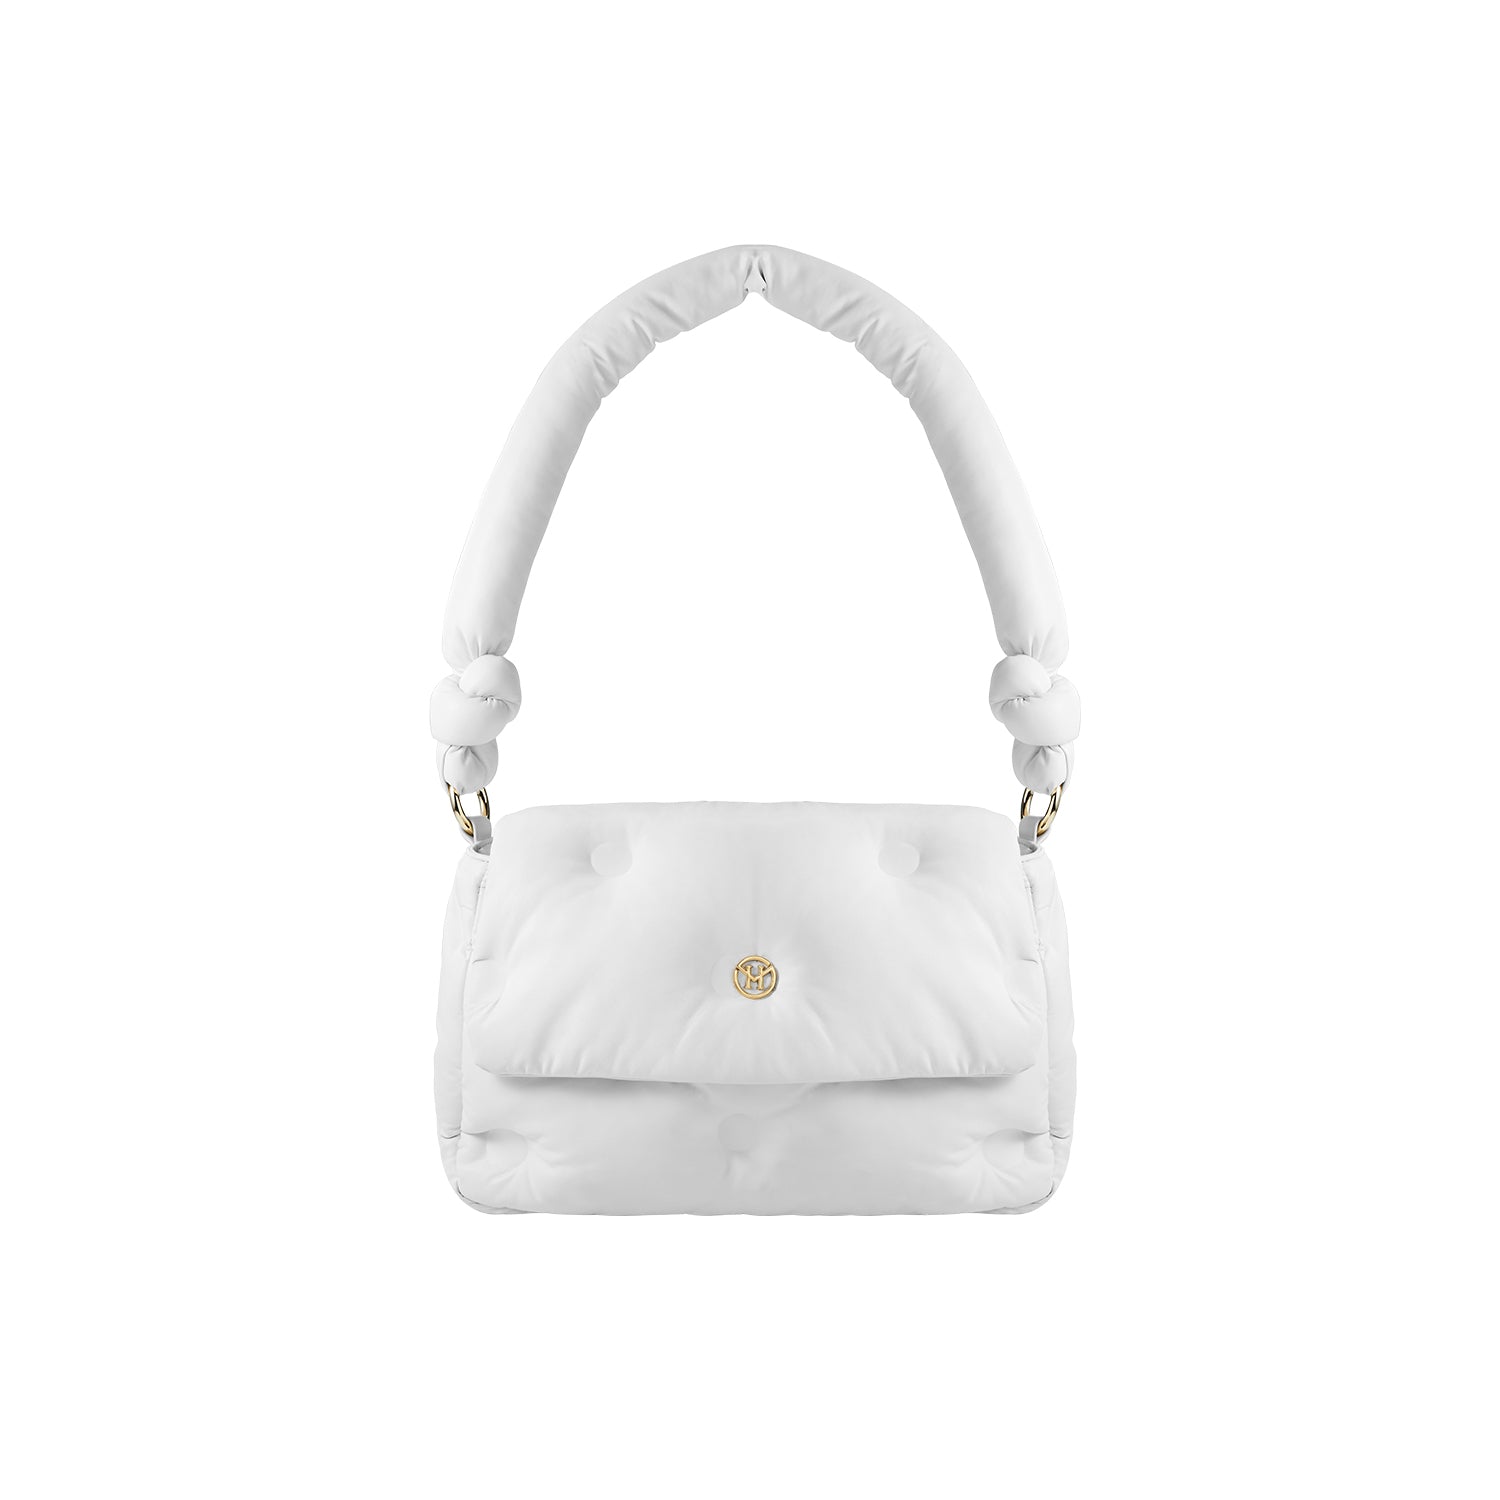 Handbag Samantha in White